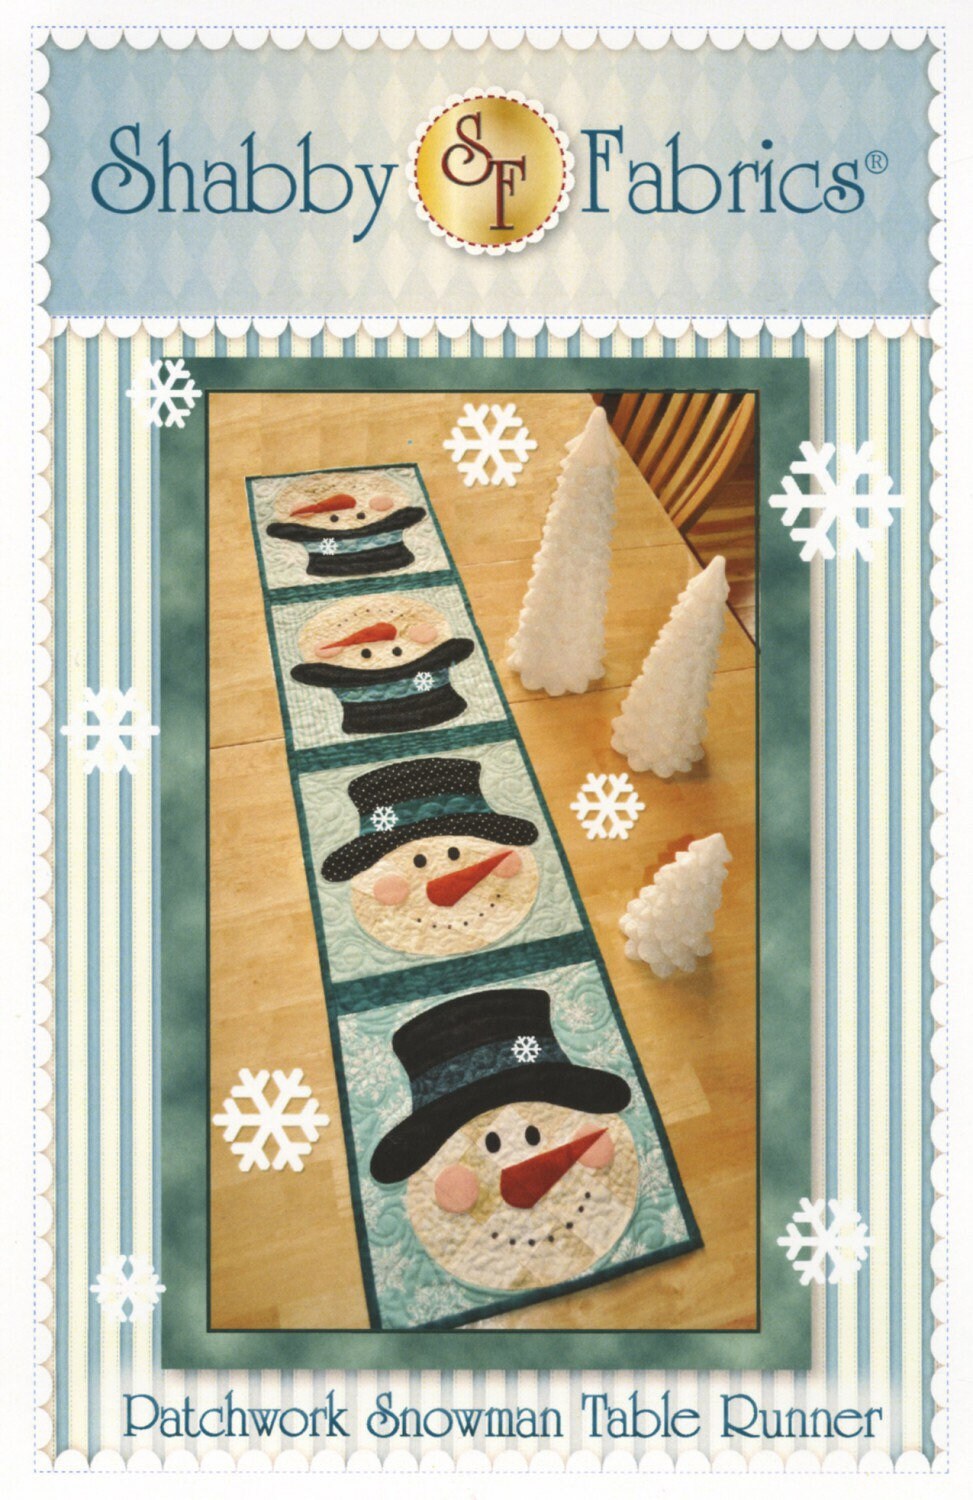 Patchwork Snowman Table Runner Pattern - Shabby Fabrics - Jennifer Bosworth - Winter Table Runner Pattern